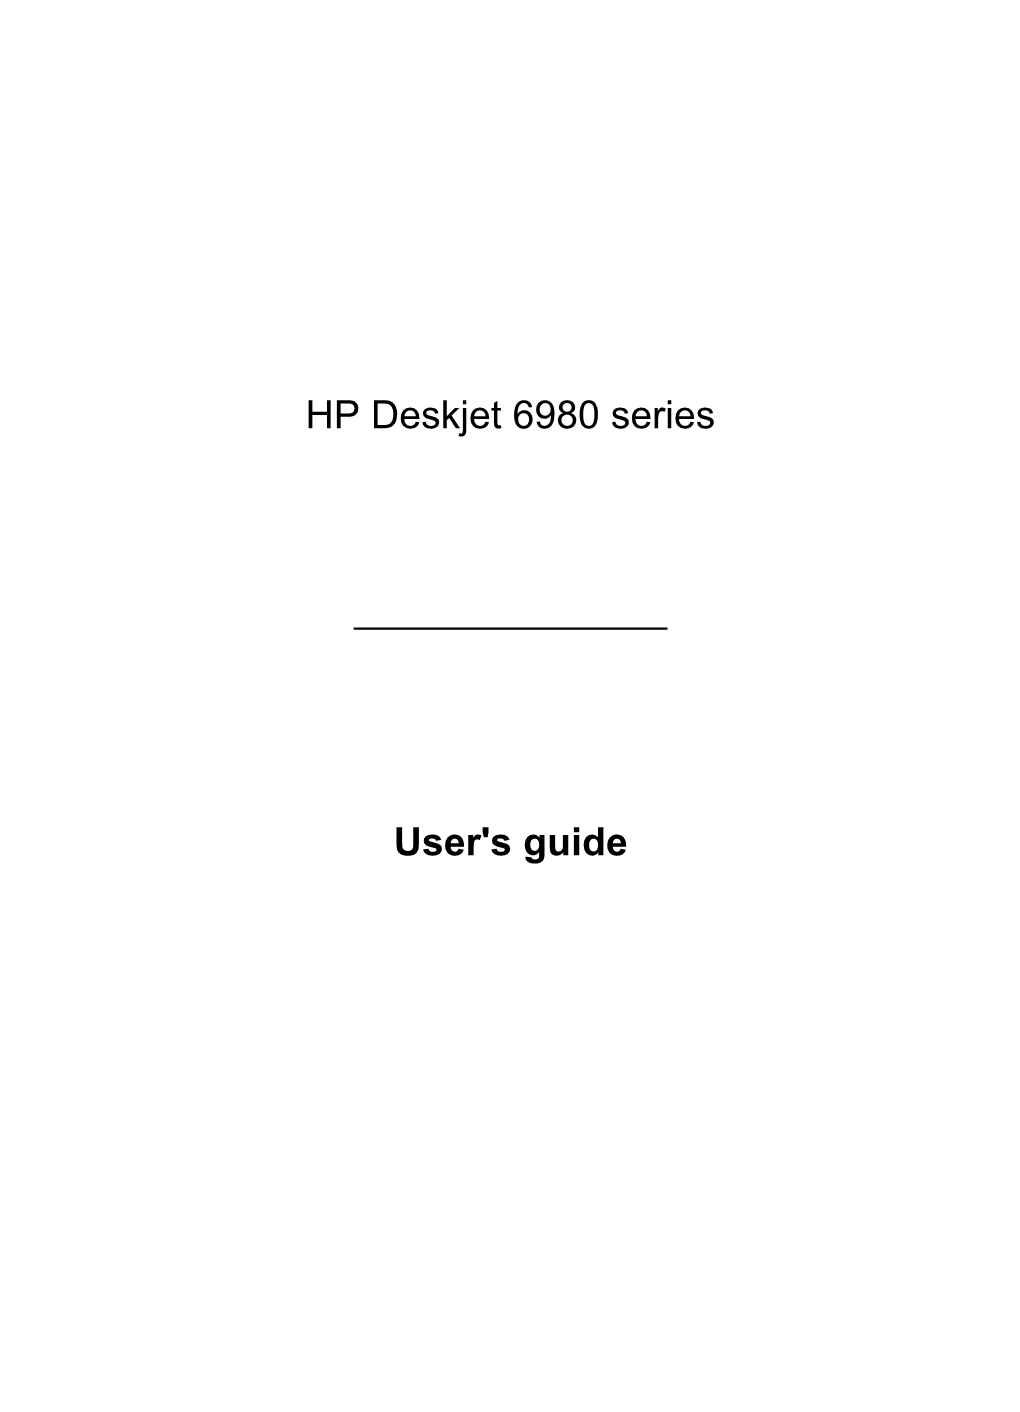 HP Deskjet 6980 Series User's Guide